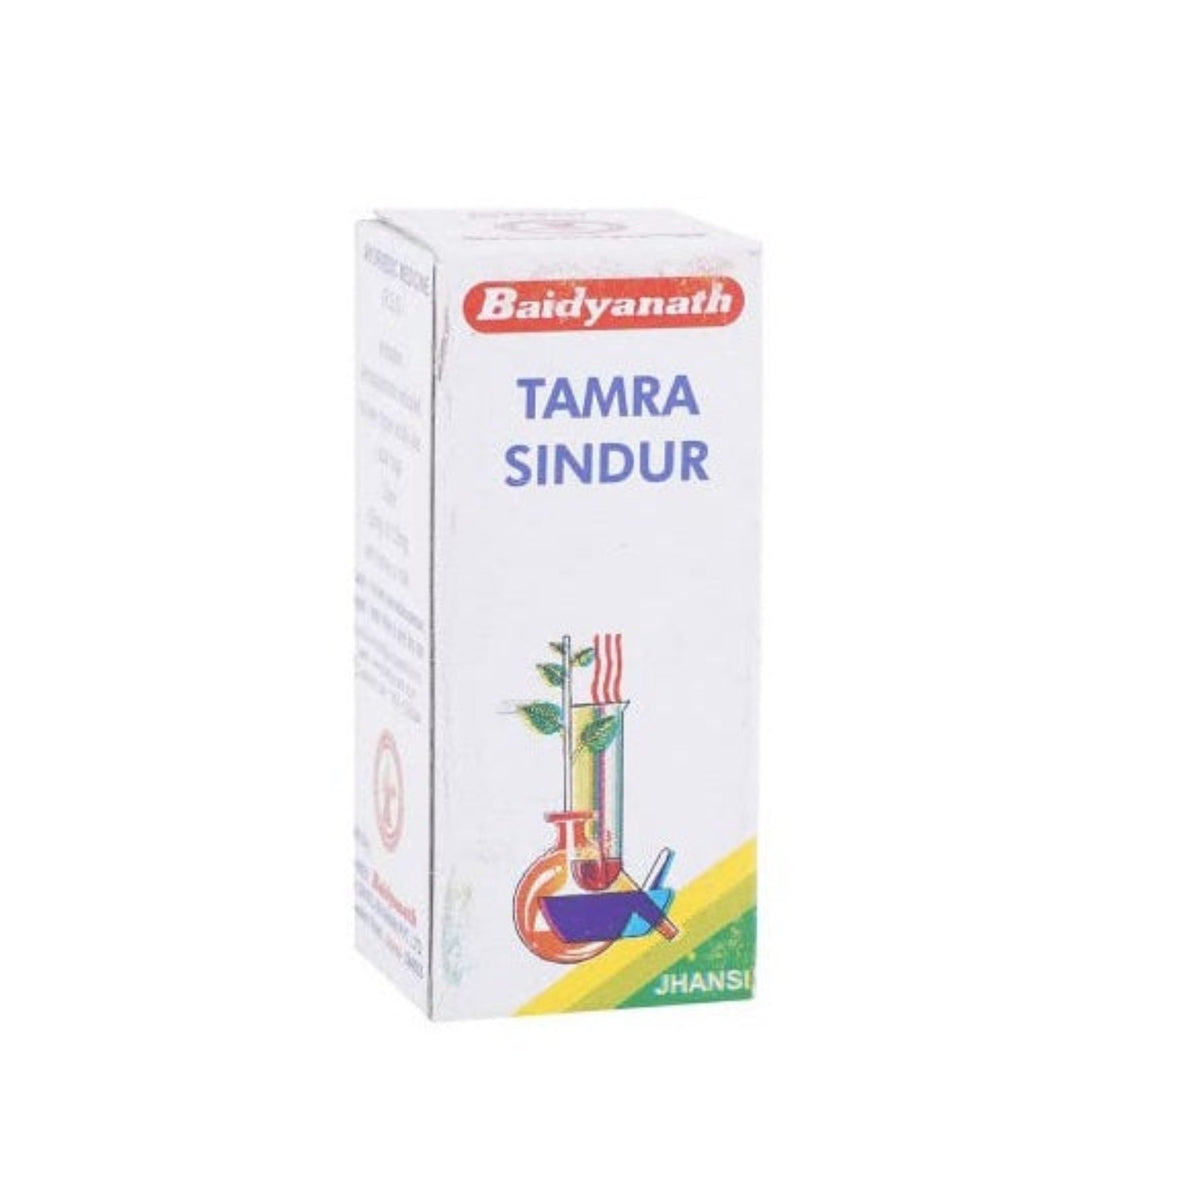 Baidyanath Ayurvedisches (Janshi) Tamra Sindoor-Pulver 2,5 g